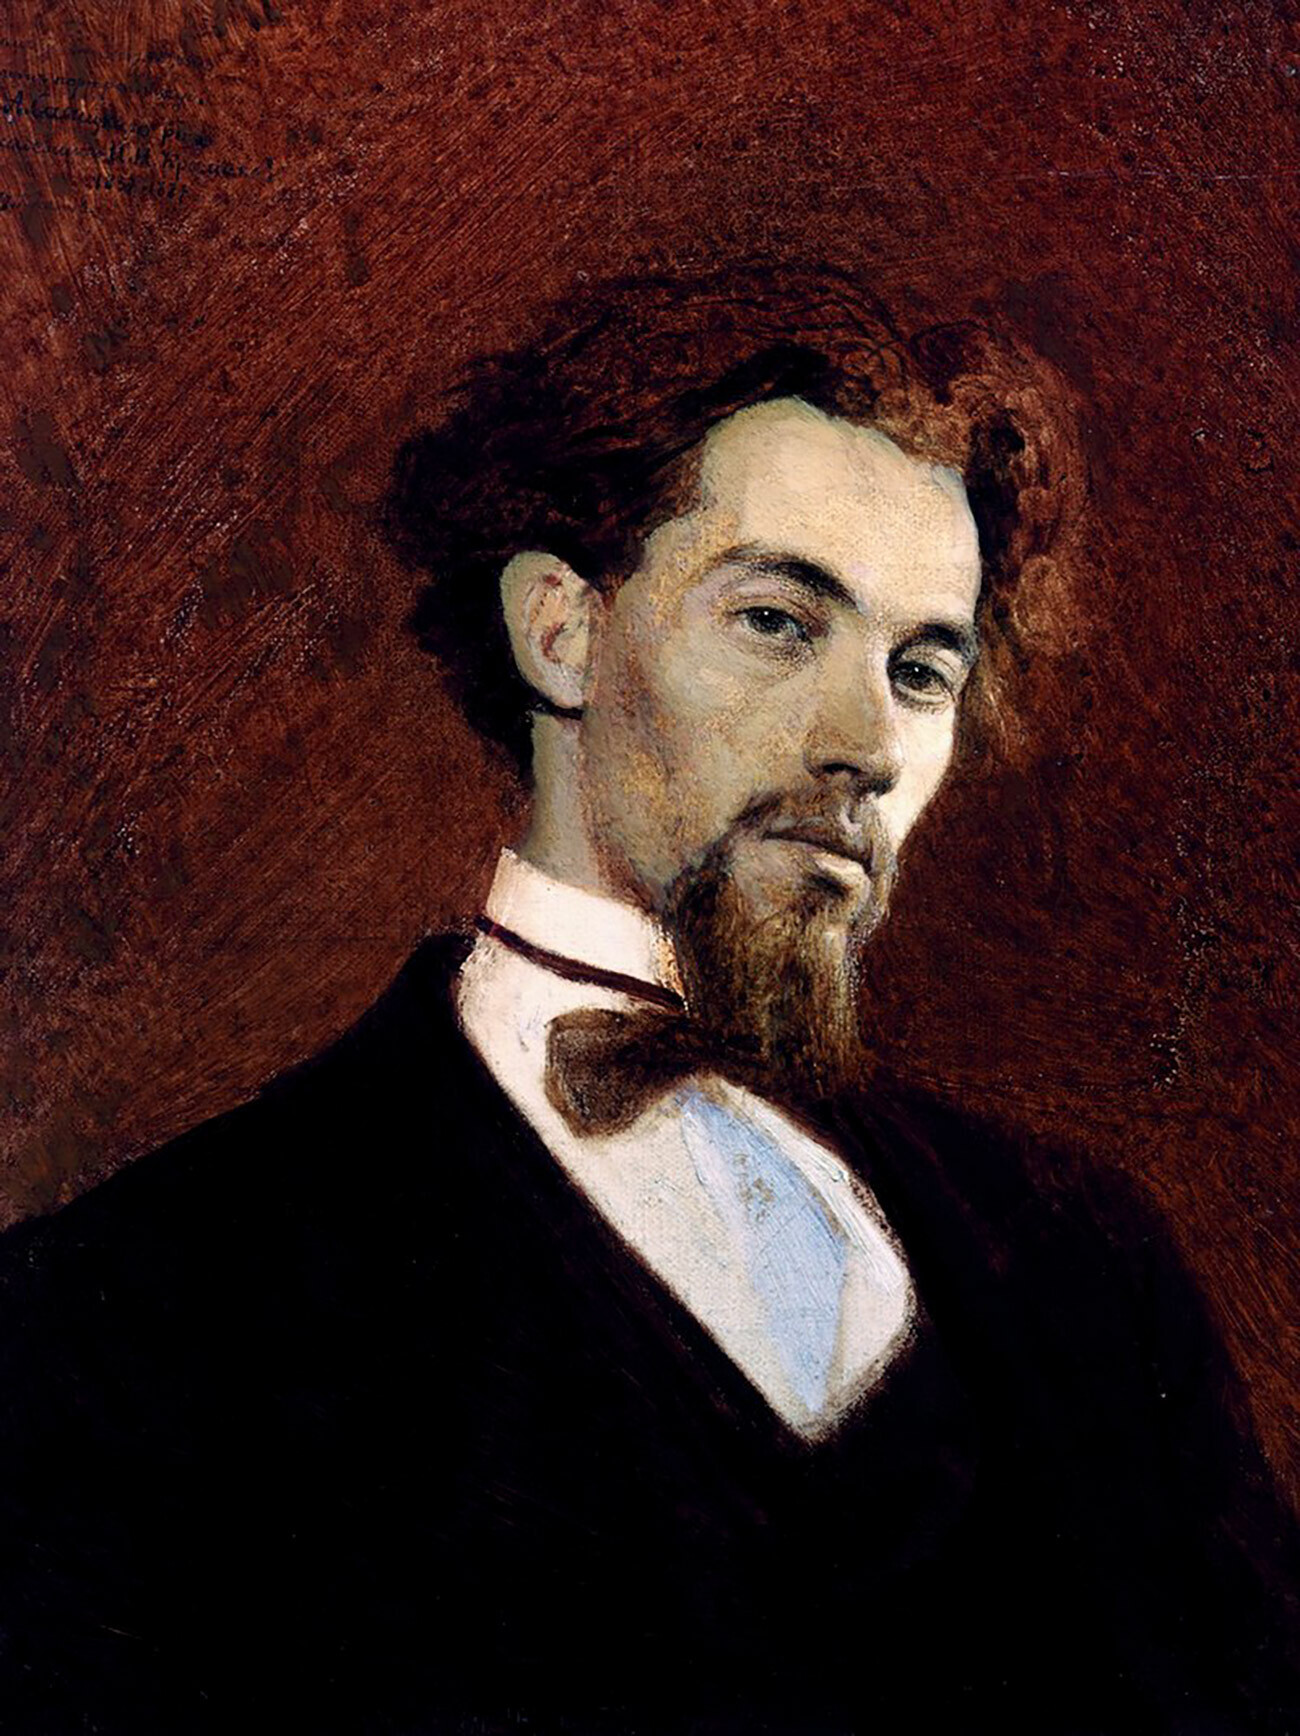 Retrato do artista K.A. Savítski. Feito por Ivan Kramskoi, 1871

